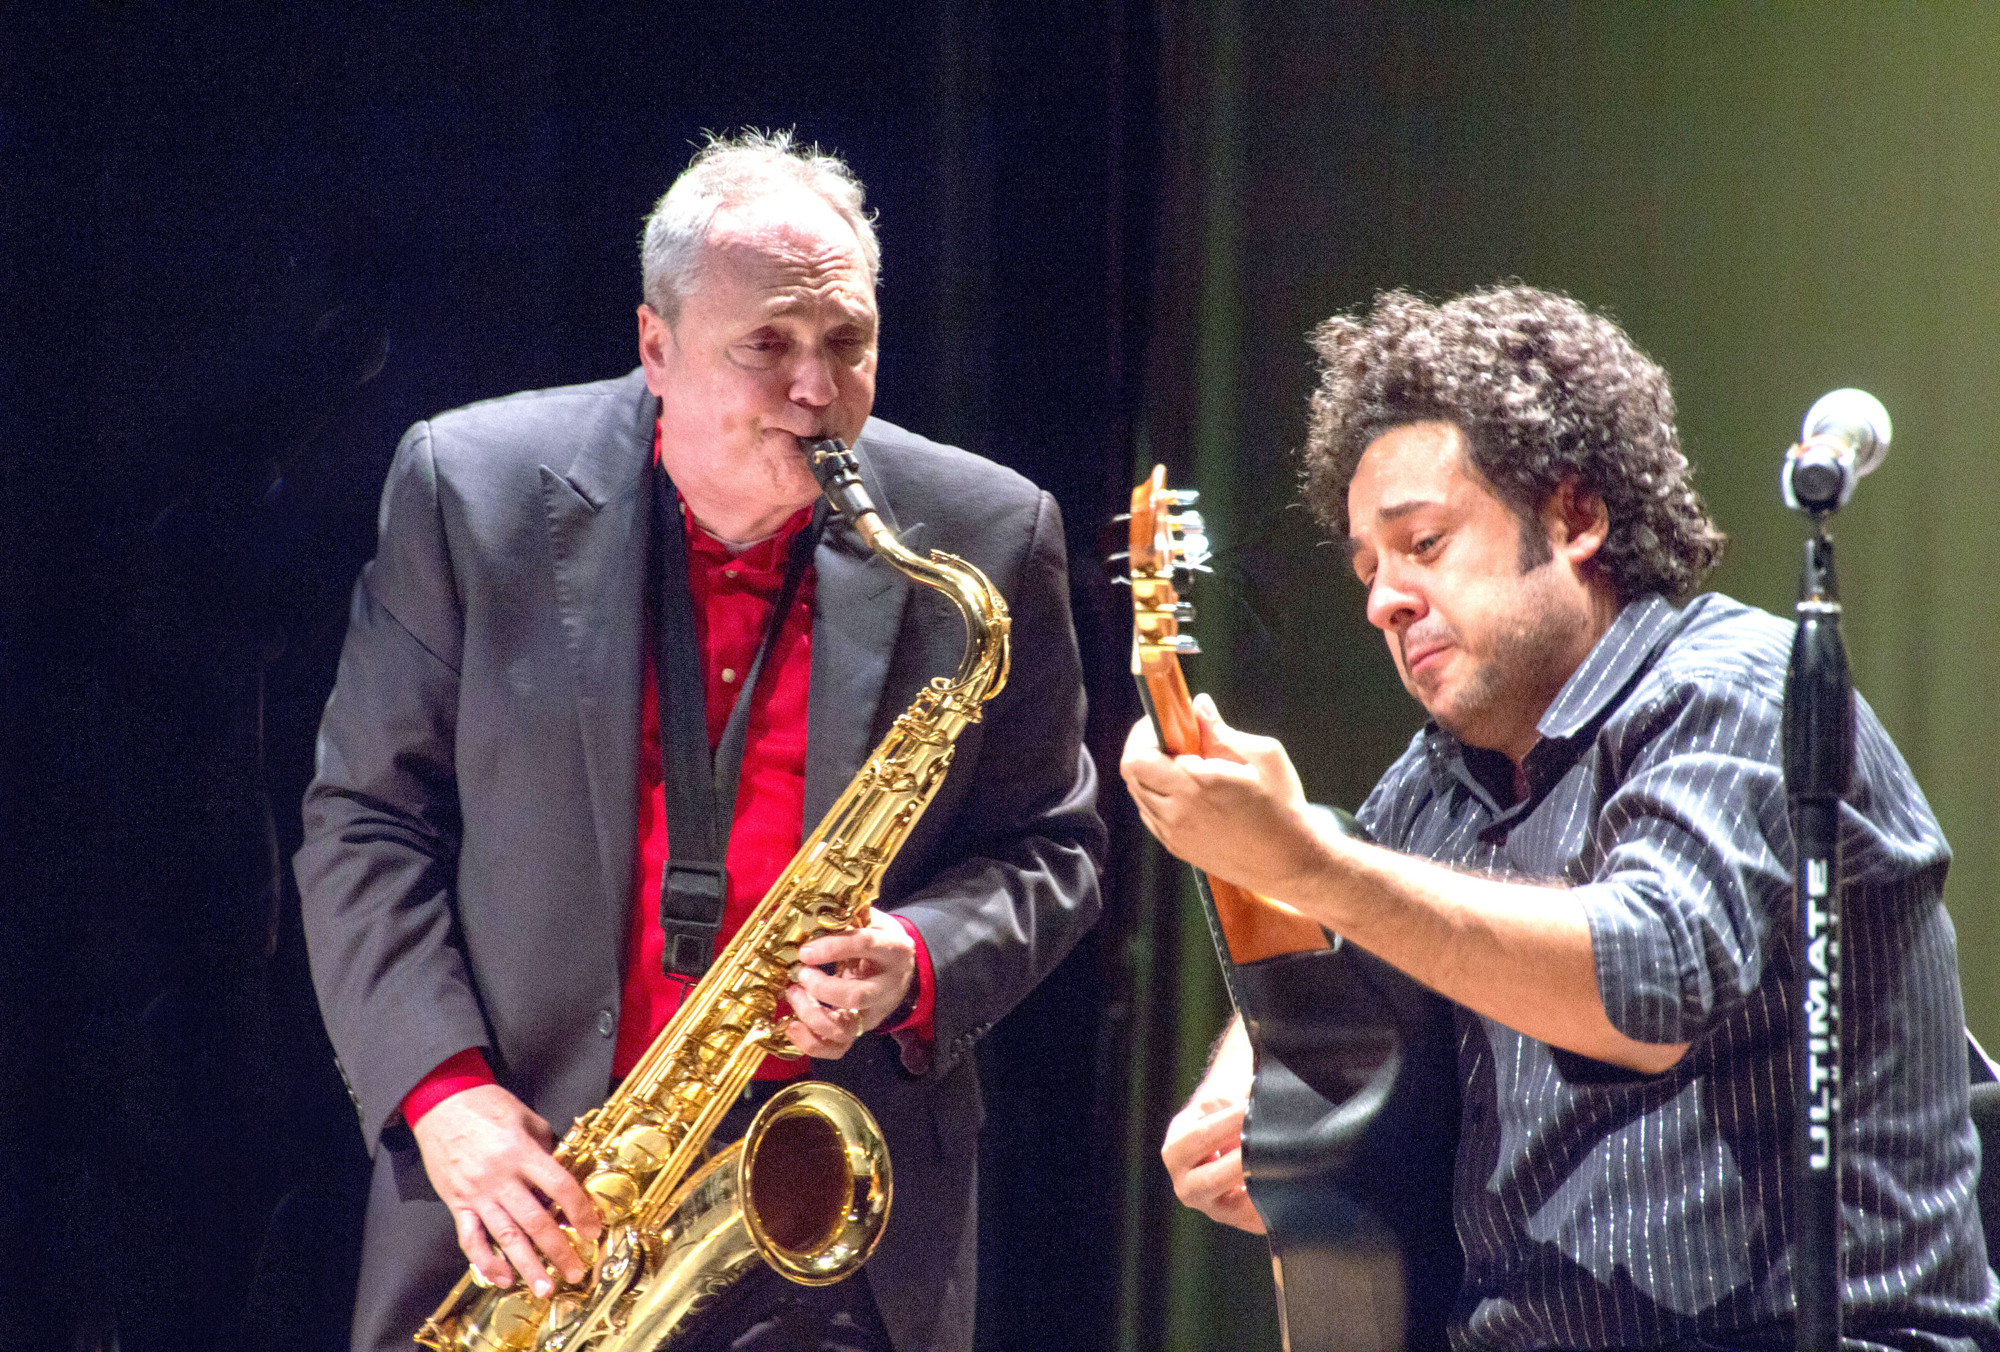  Ken Peplowski performs with Diego Figueiredo. Courtesy image 